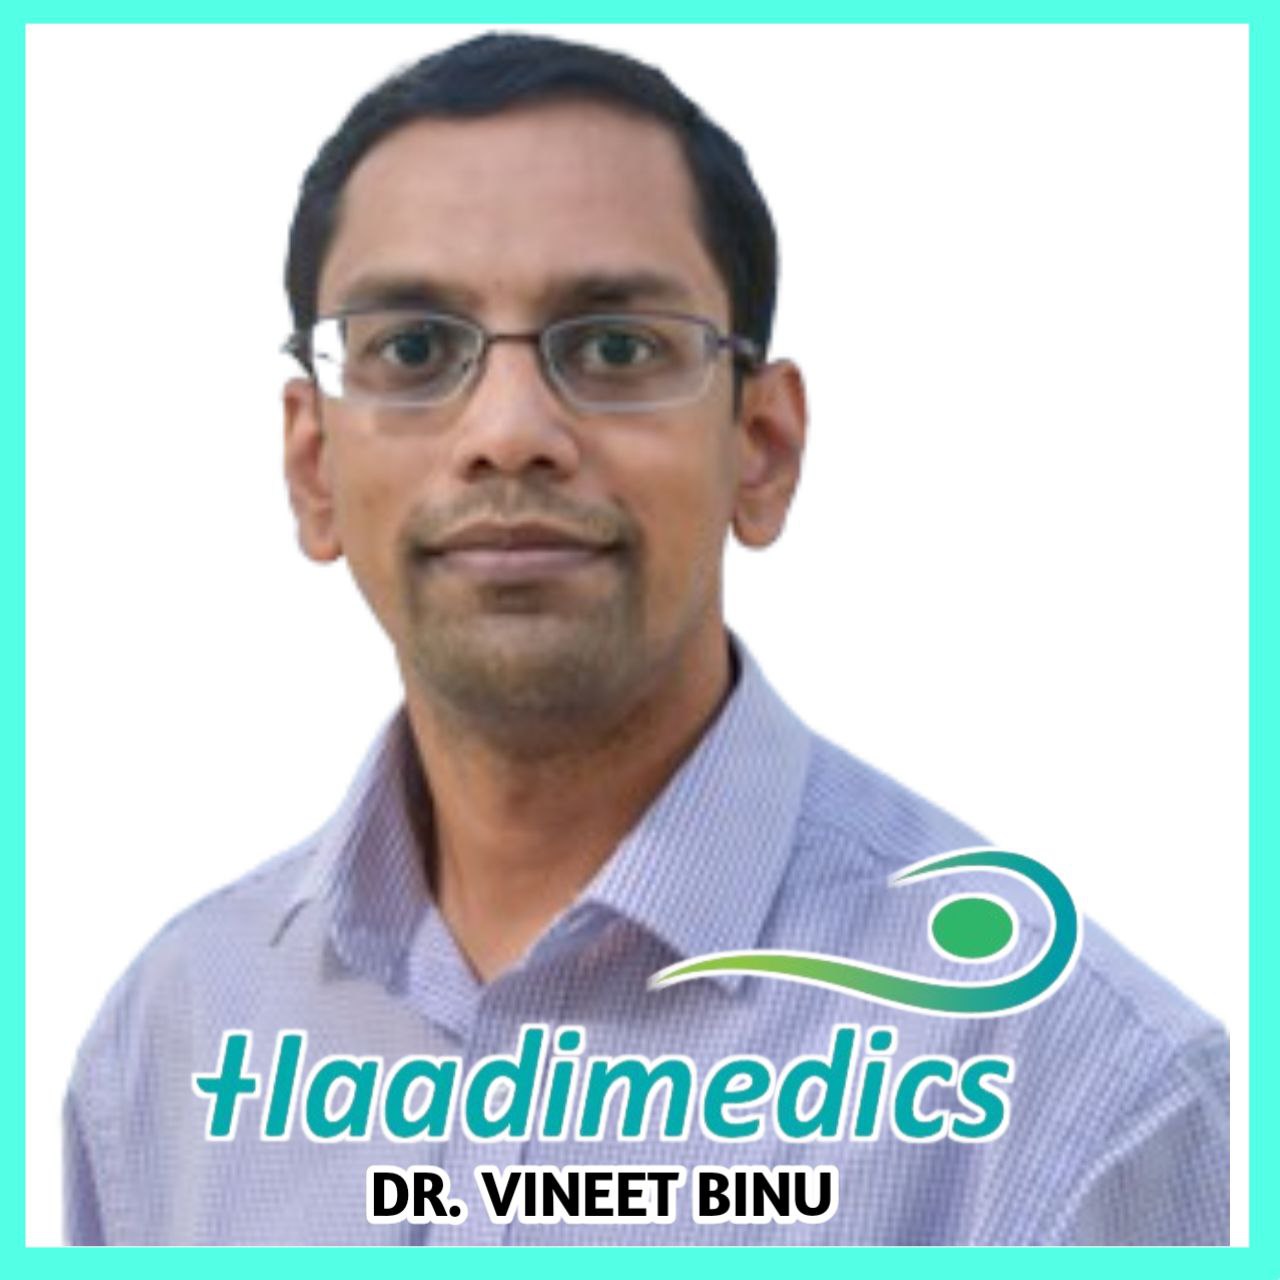 Dr. Vineet Binu